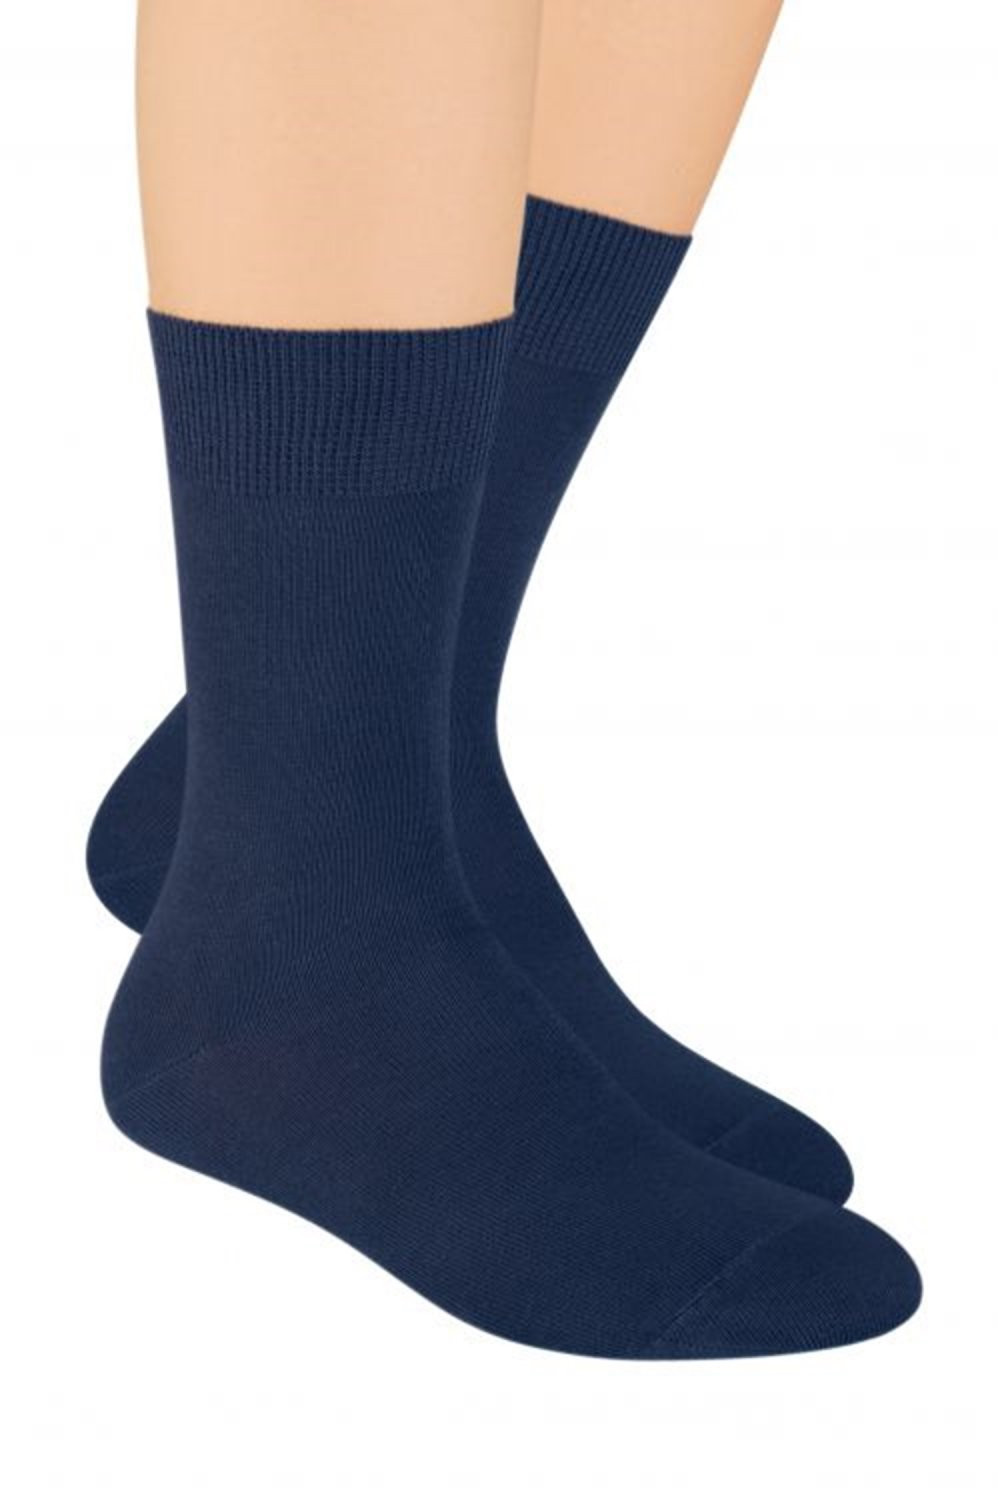 Pánské ponožky 048 dark blue - Steven tmavě modrá 38/40